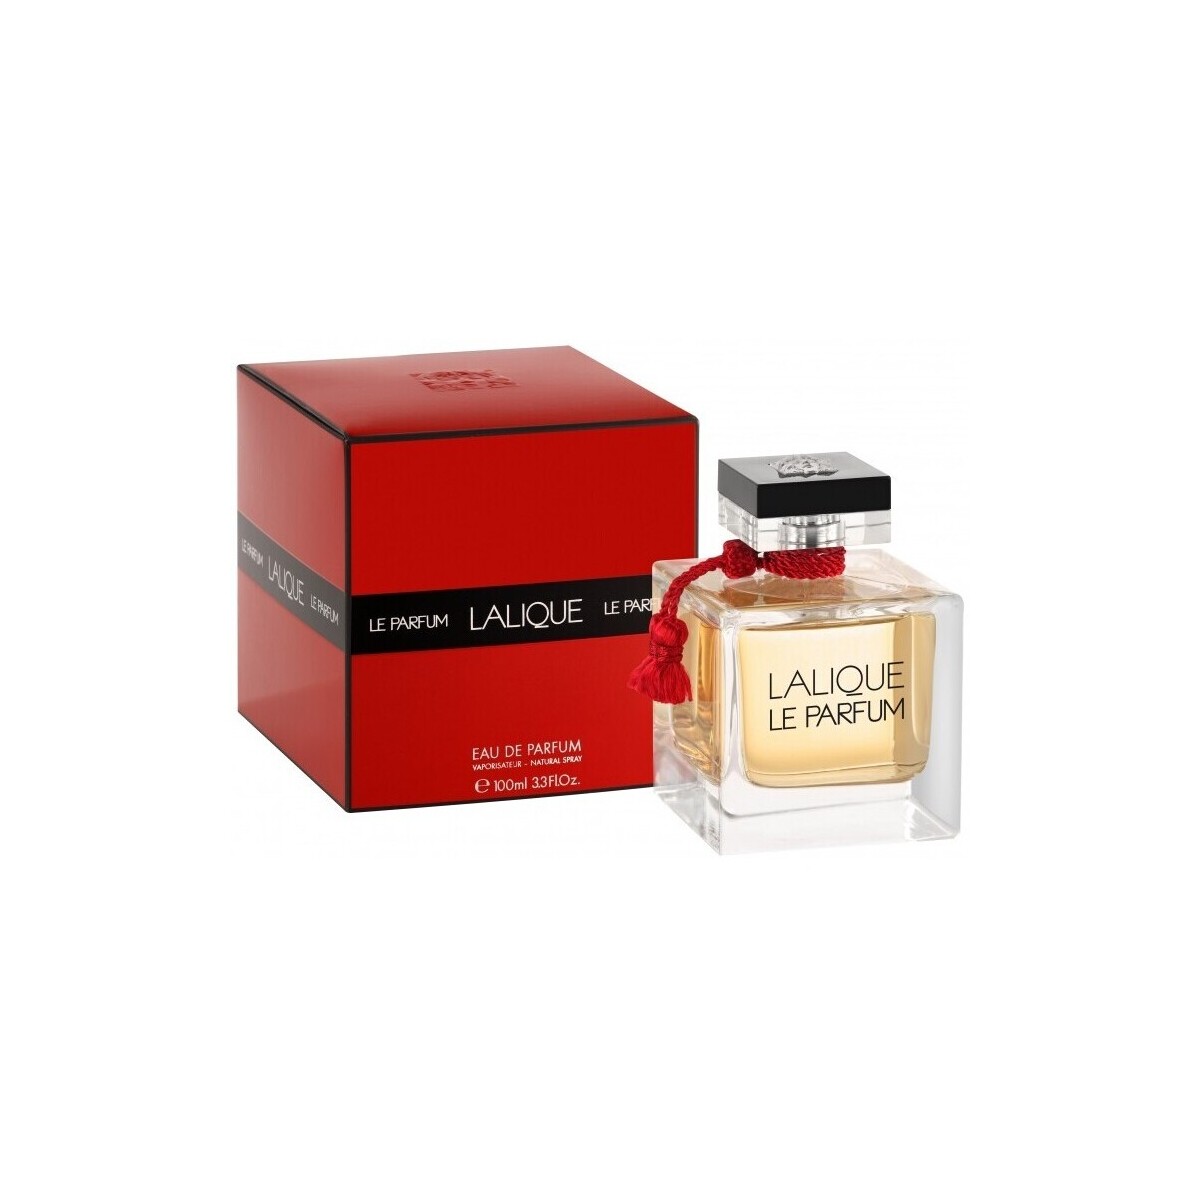 Belleza Mujer Perfume Lalique Le Perfum - Eau de Parfum - 100ml - Vaporizador Le Perfum - perfume - 100ml - spray